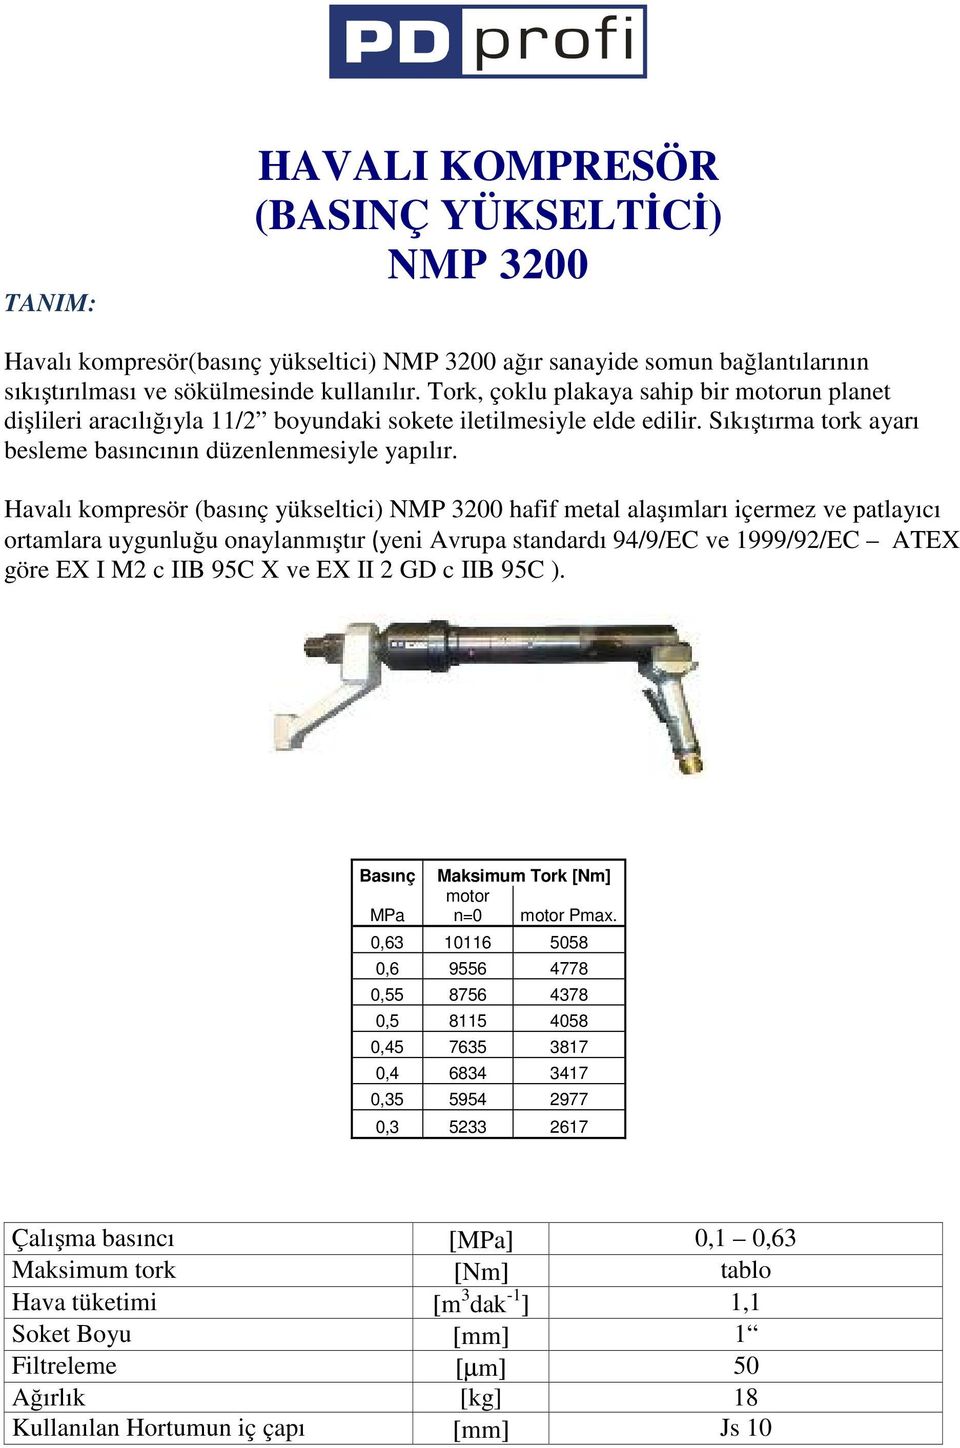 Havalı kompresör (basınç yükseltici) NMP 3200 hafif metal alaşımları içermez ve patlayıcı ortamlara uygunluğu onaylanmıştır (yeni Avrupa standardı 94/9/EC ve 1999/92/EC ATEX göre EX I M2 c IIB 95C X